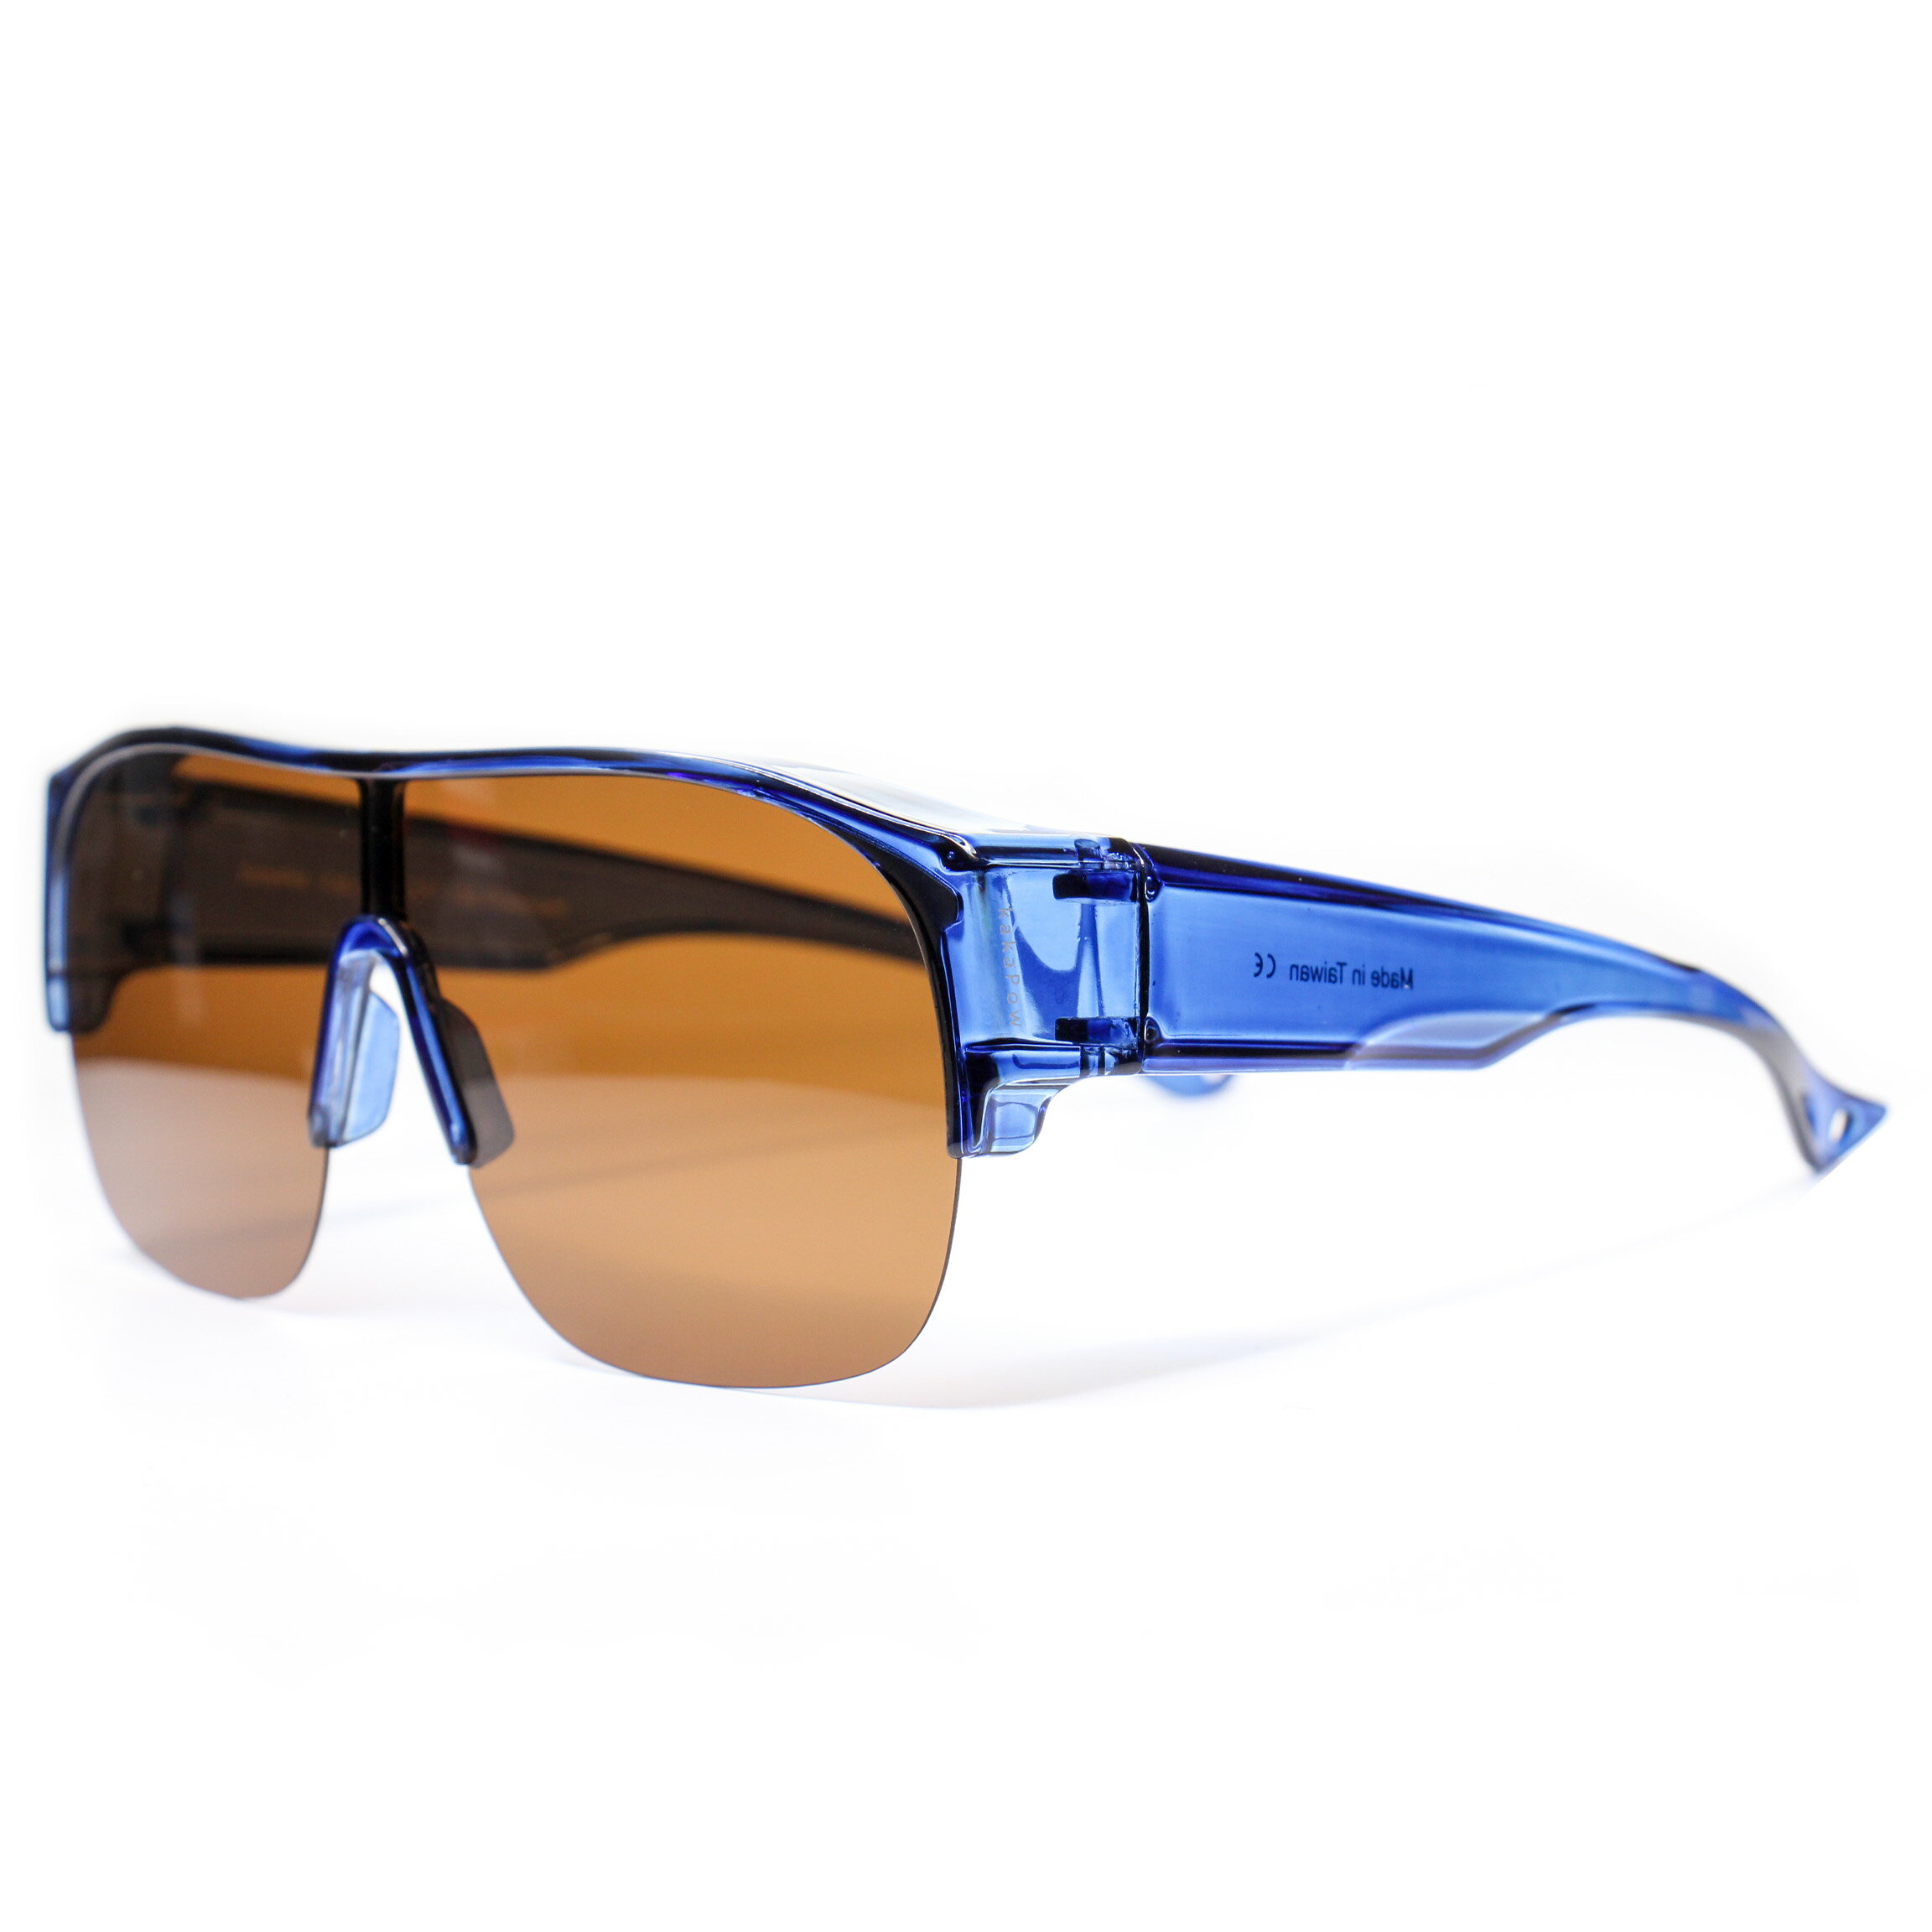 套式太陽眼鏡 偏光運動太陽眼鏡 包覆近視眼鏡 景像不失真 防眩光 UV400 UVA UVB 過濾紫外線及強光 寶麗來偏光鏡片 透森藍